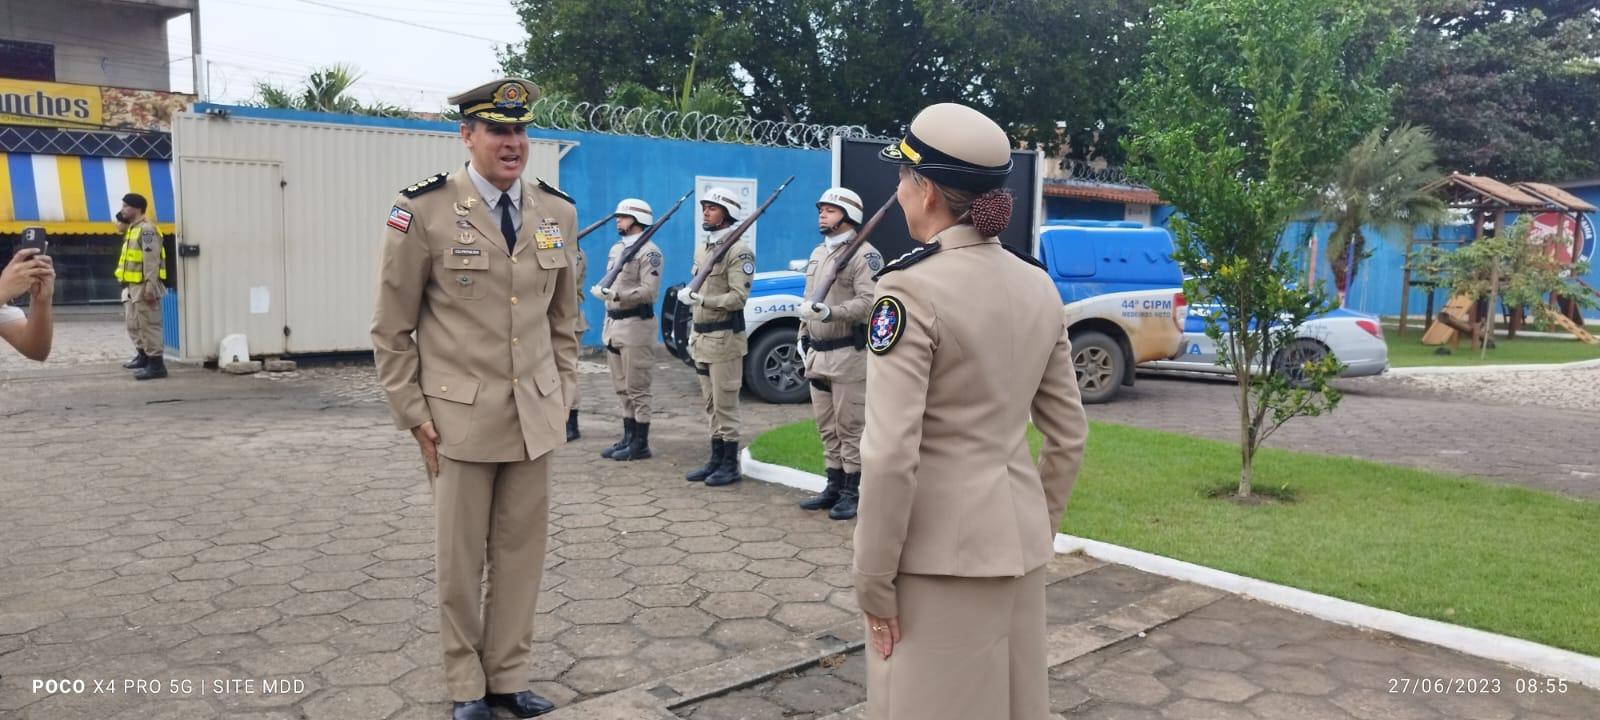 Vídeo: Major Fabiano Santos assume o Comando da 44ª CIPM/Medeiros Neto